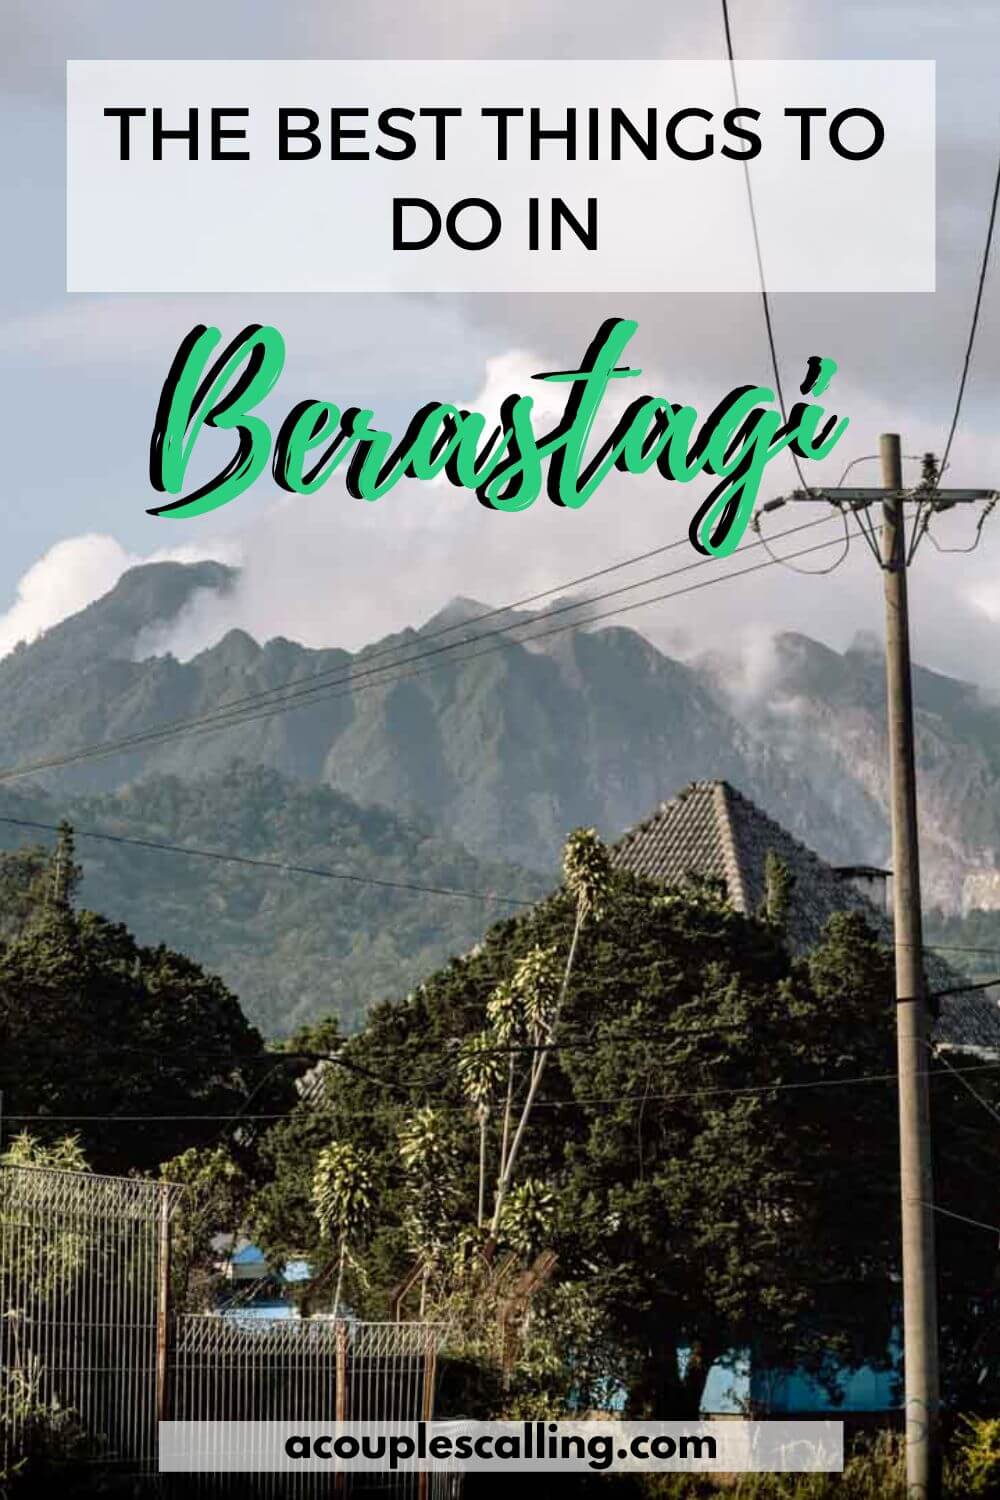 Things to do in Berastagi, Sumatra